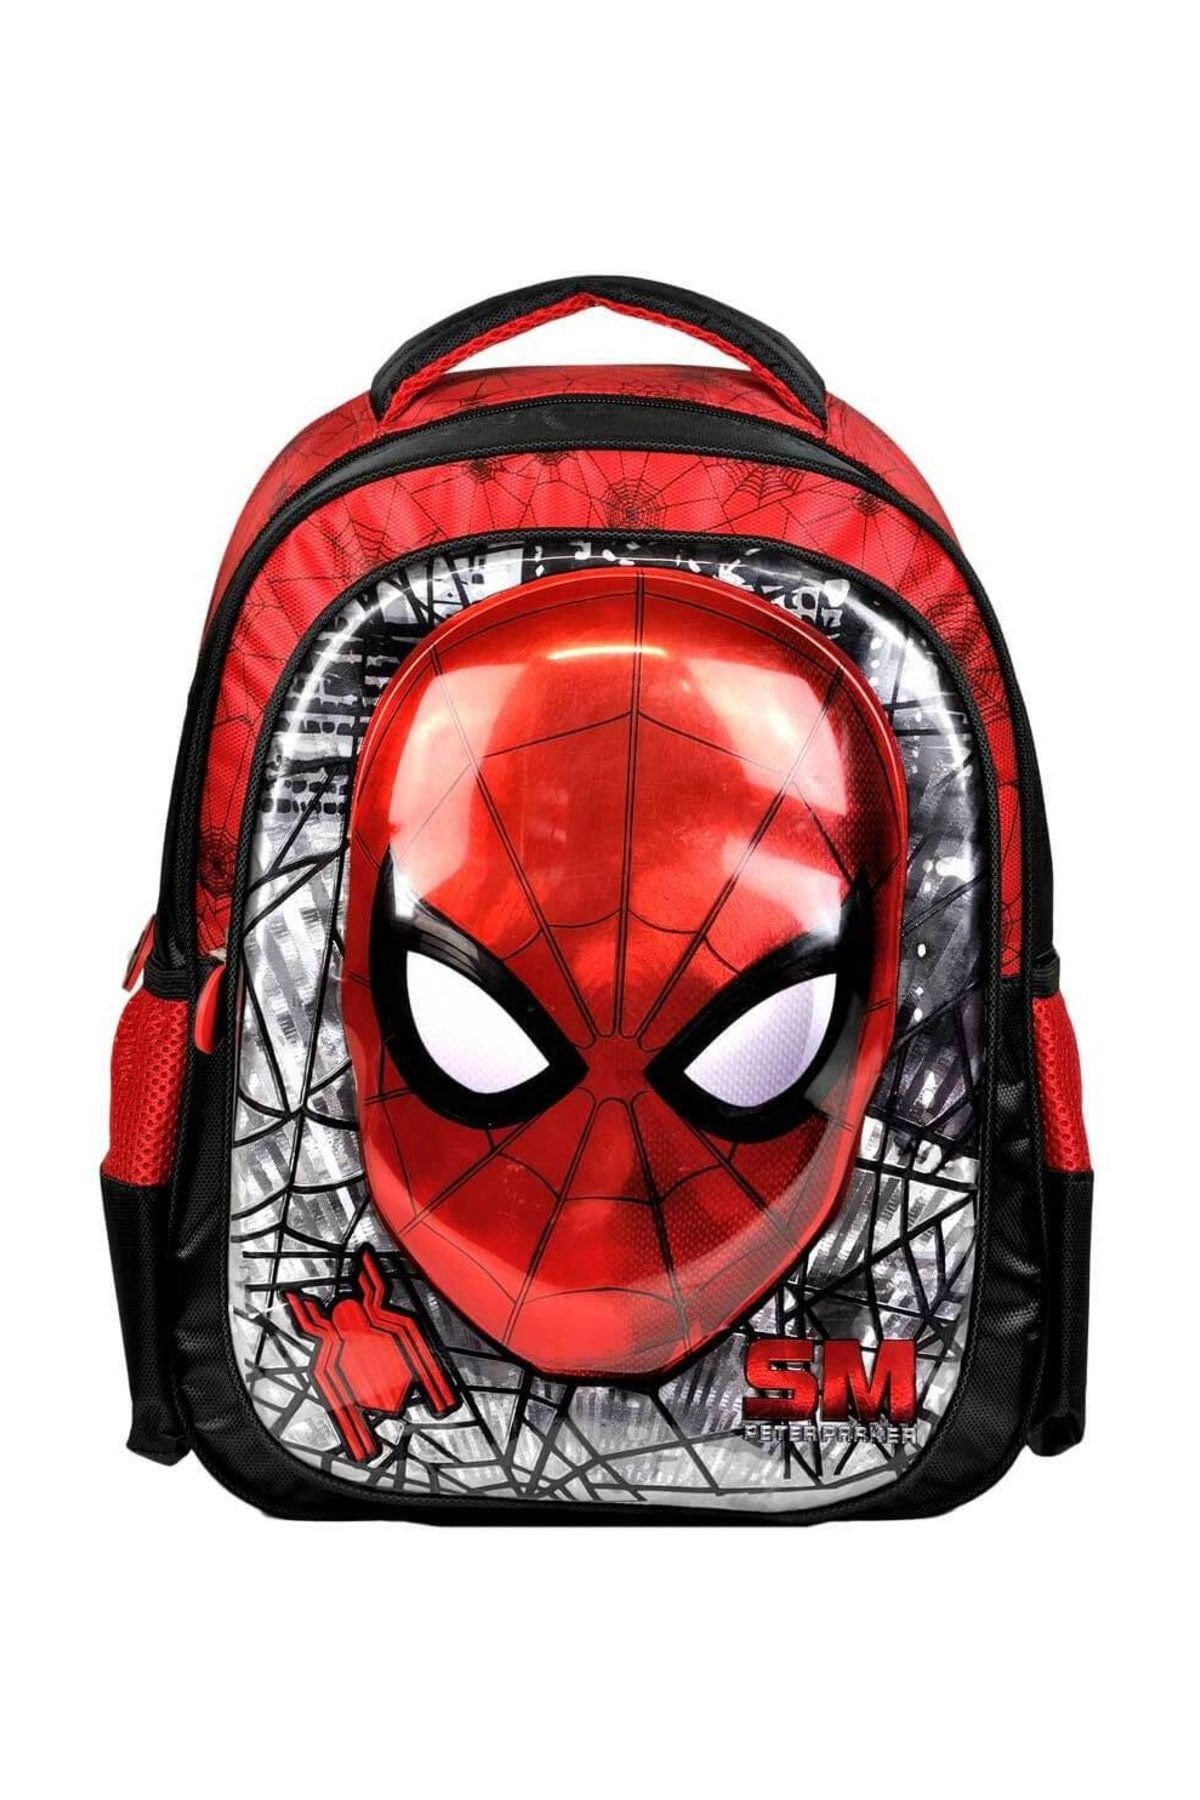 Hakan Çanta Spiderman Okul Çantası 95339